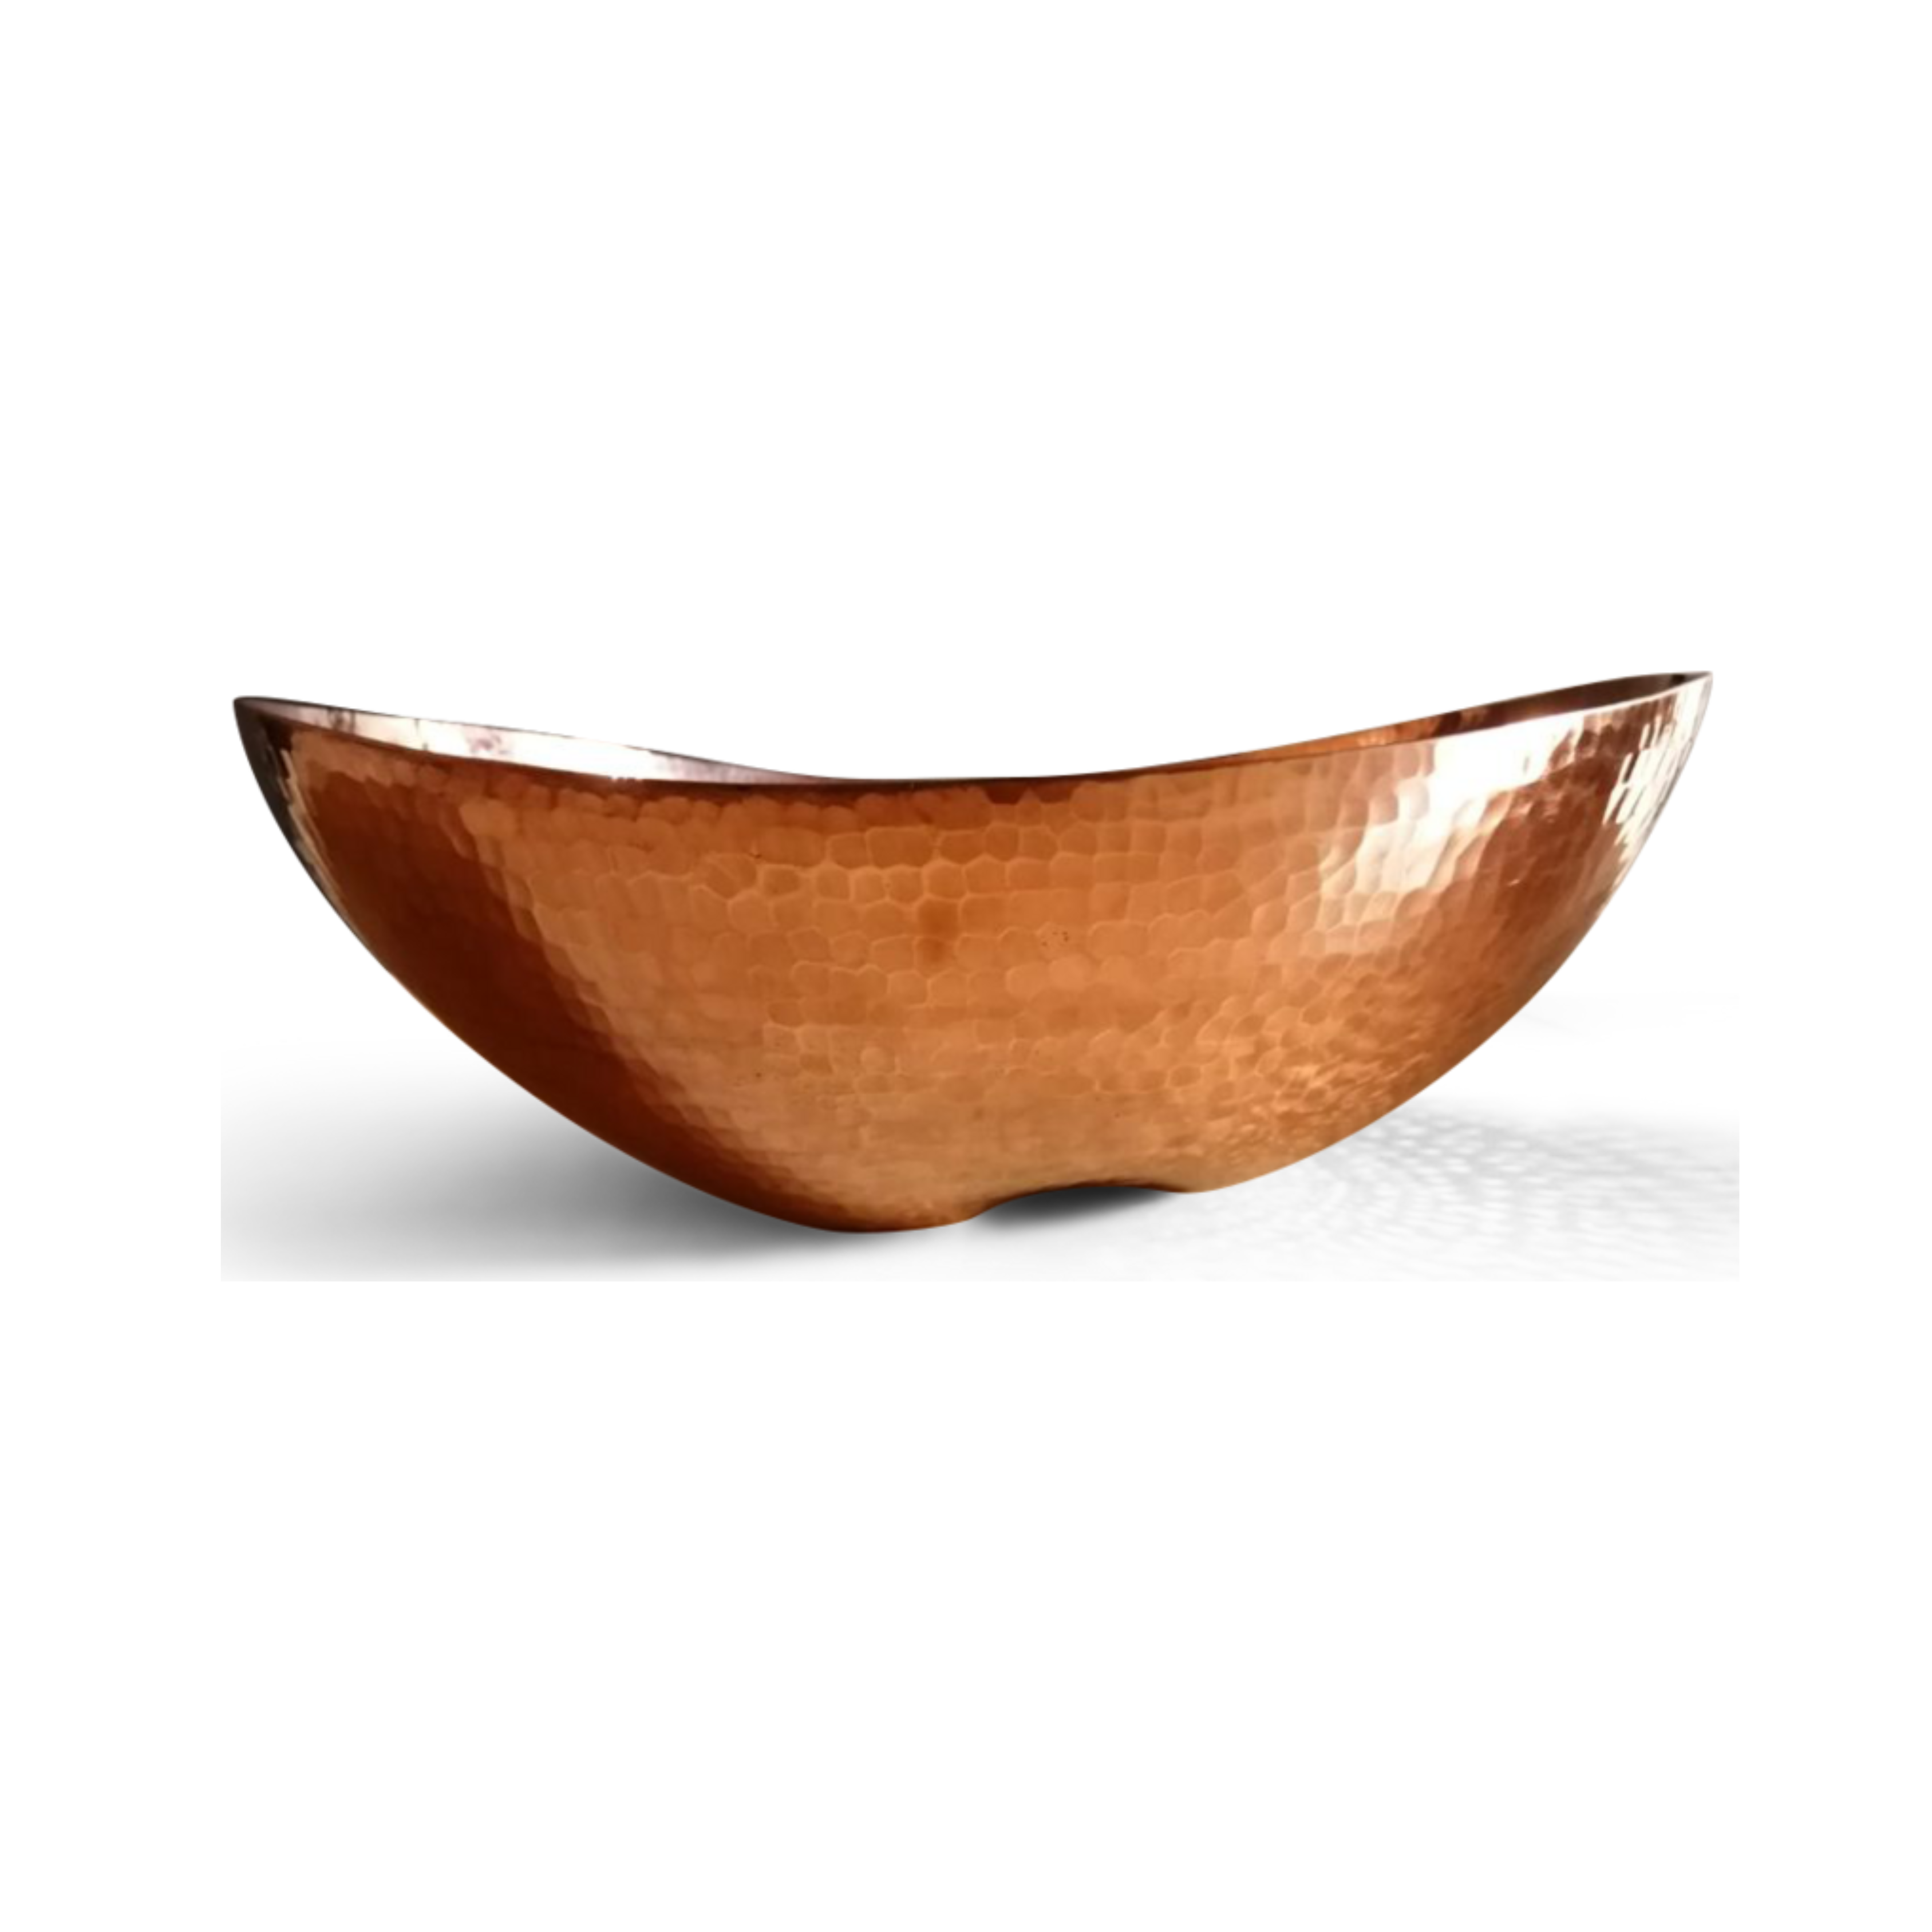 Bermuda Hammered Copper fruit bowl